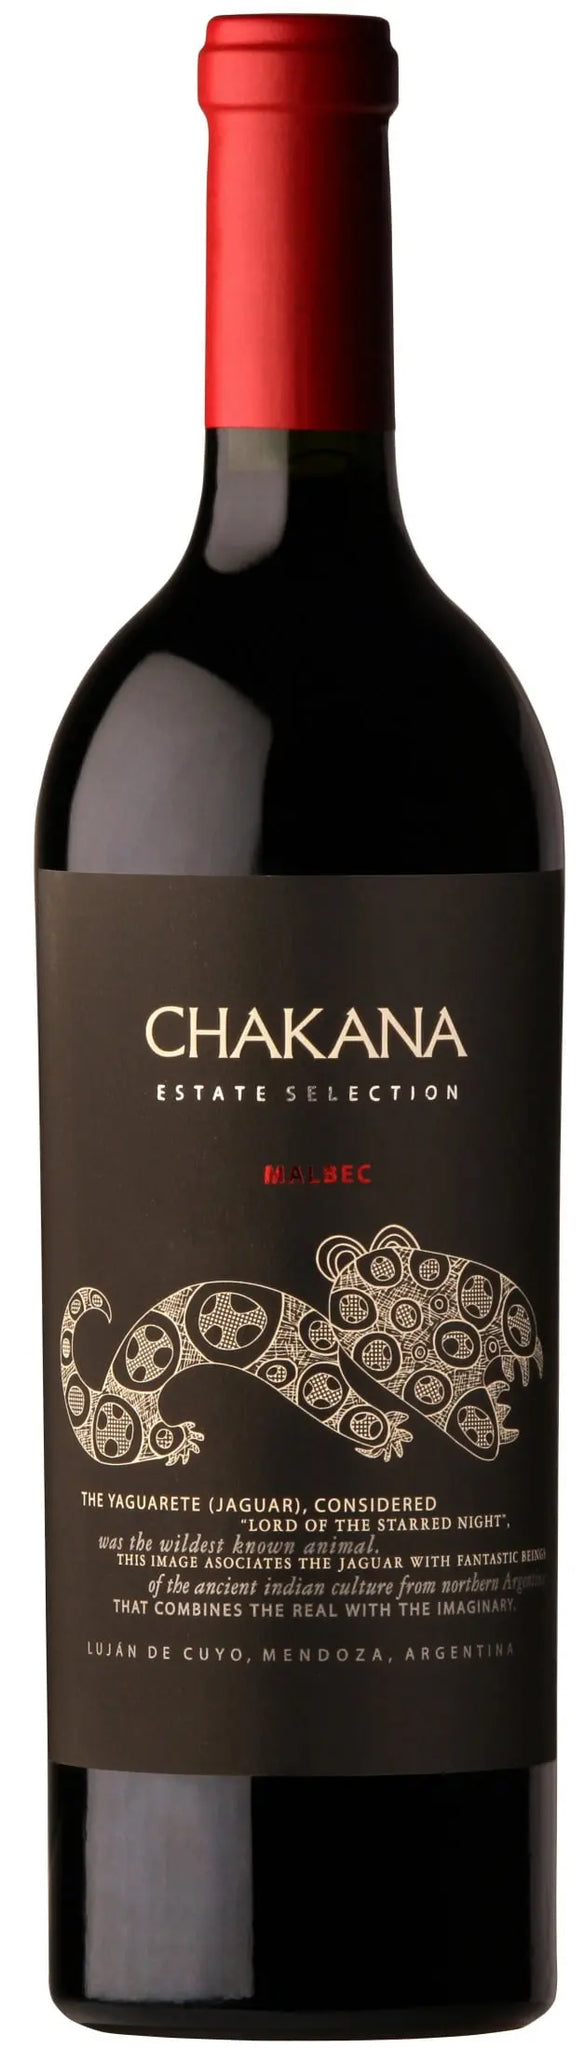 Chakana Estate Selection Malbec 2019 (1x75cl) - TwoMoreGlasses.com